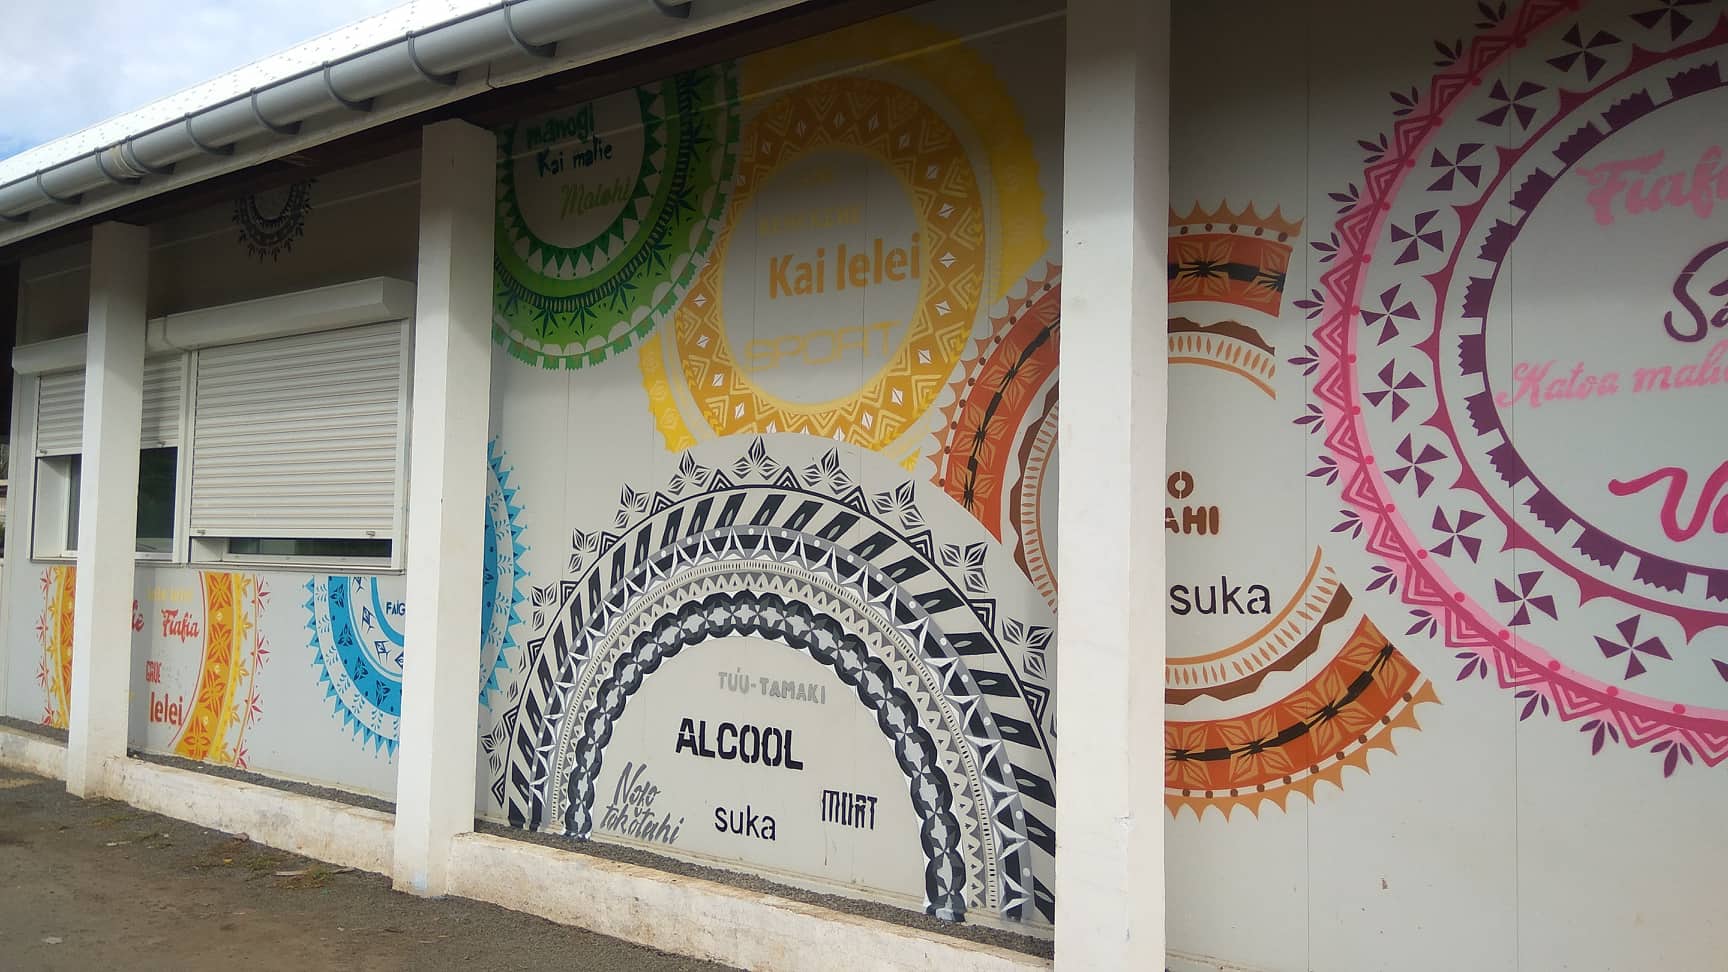 Tapa - fresque réalisée par les jeunes de Wallis et Futuna